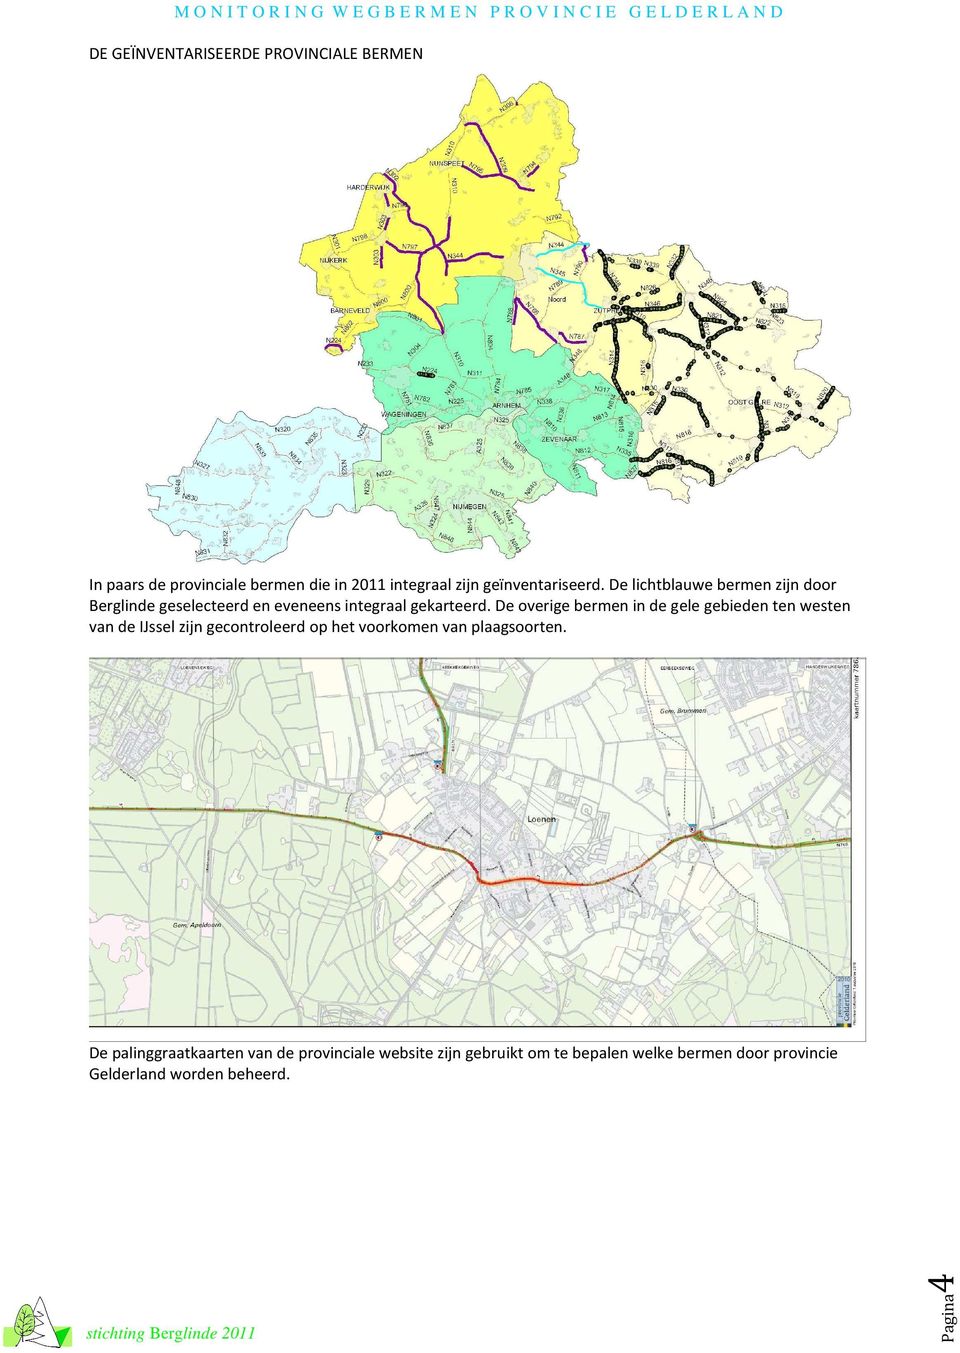 De overige bermen in de gele gebieden ten westen van de IJssel zijn gecontroleerd op het voorkomen van plaagsoorten.